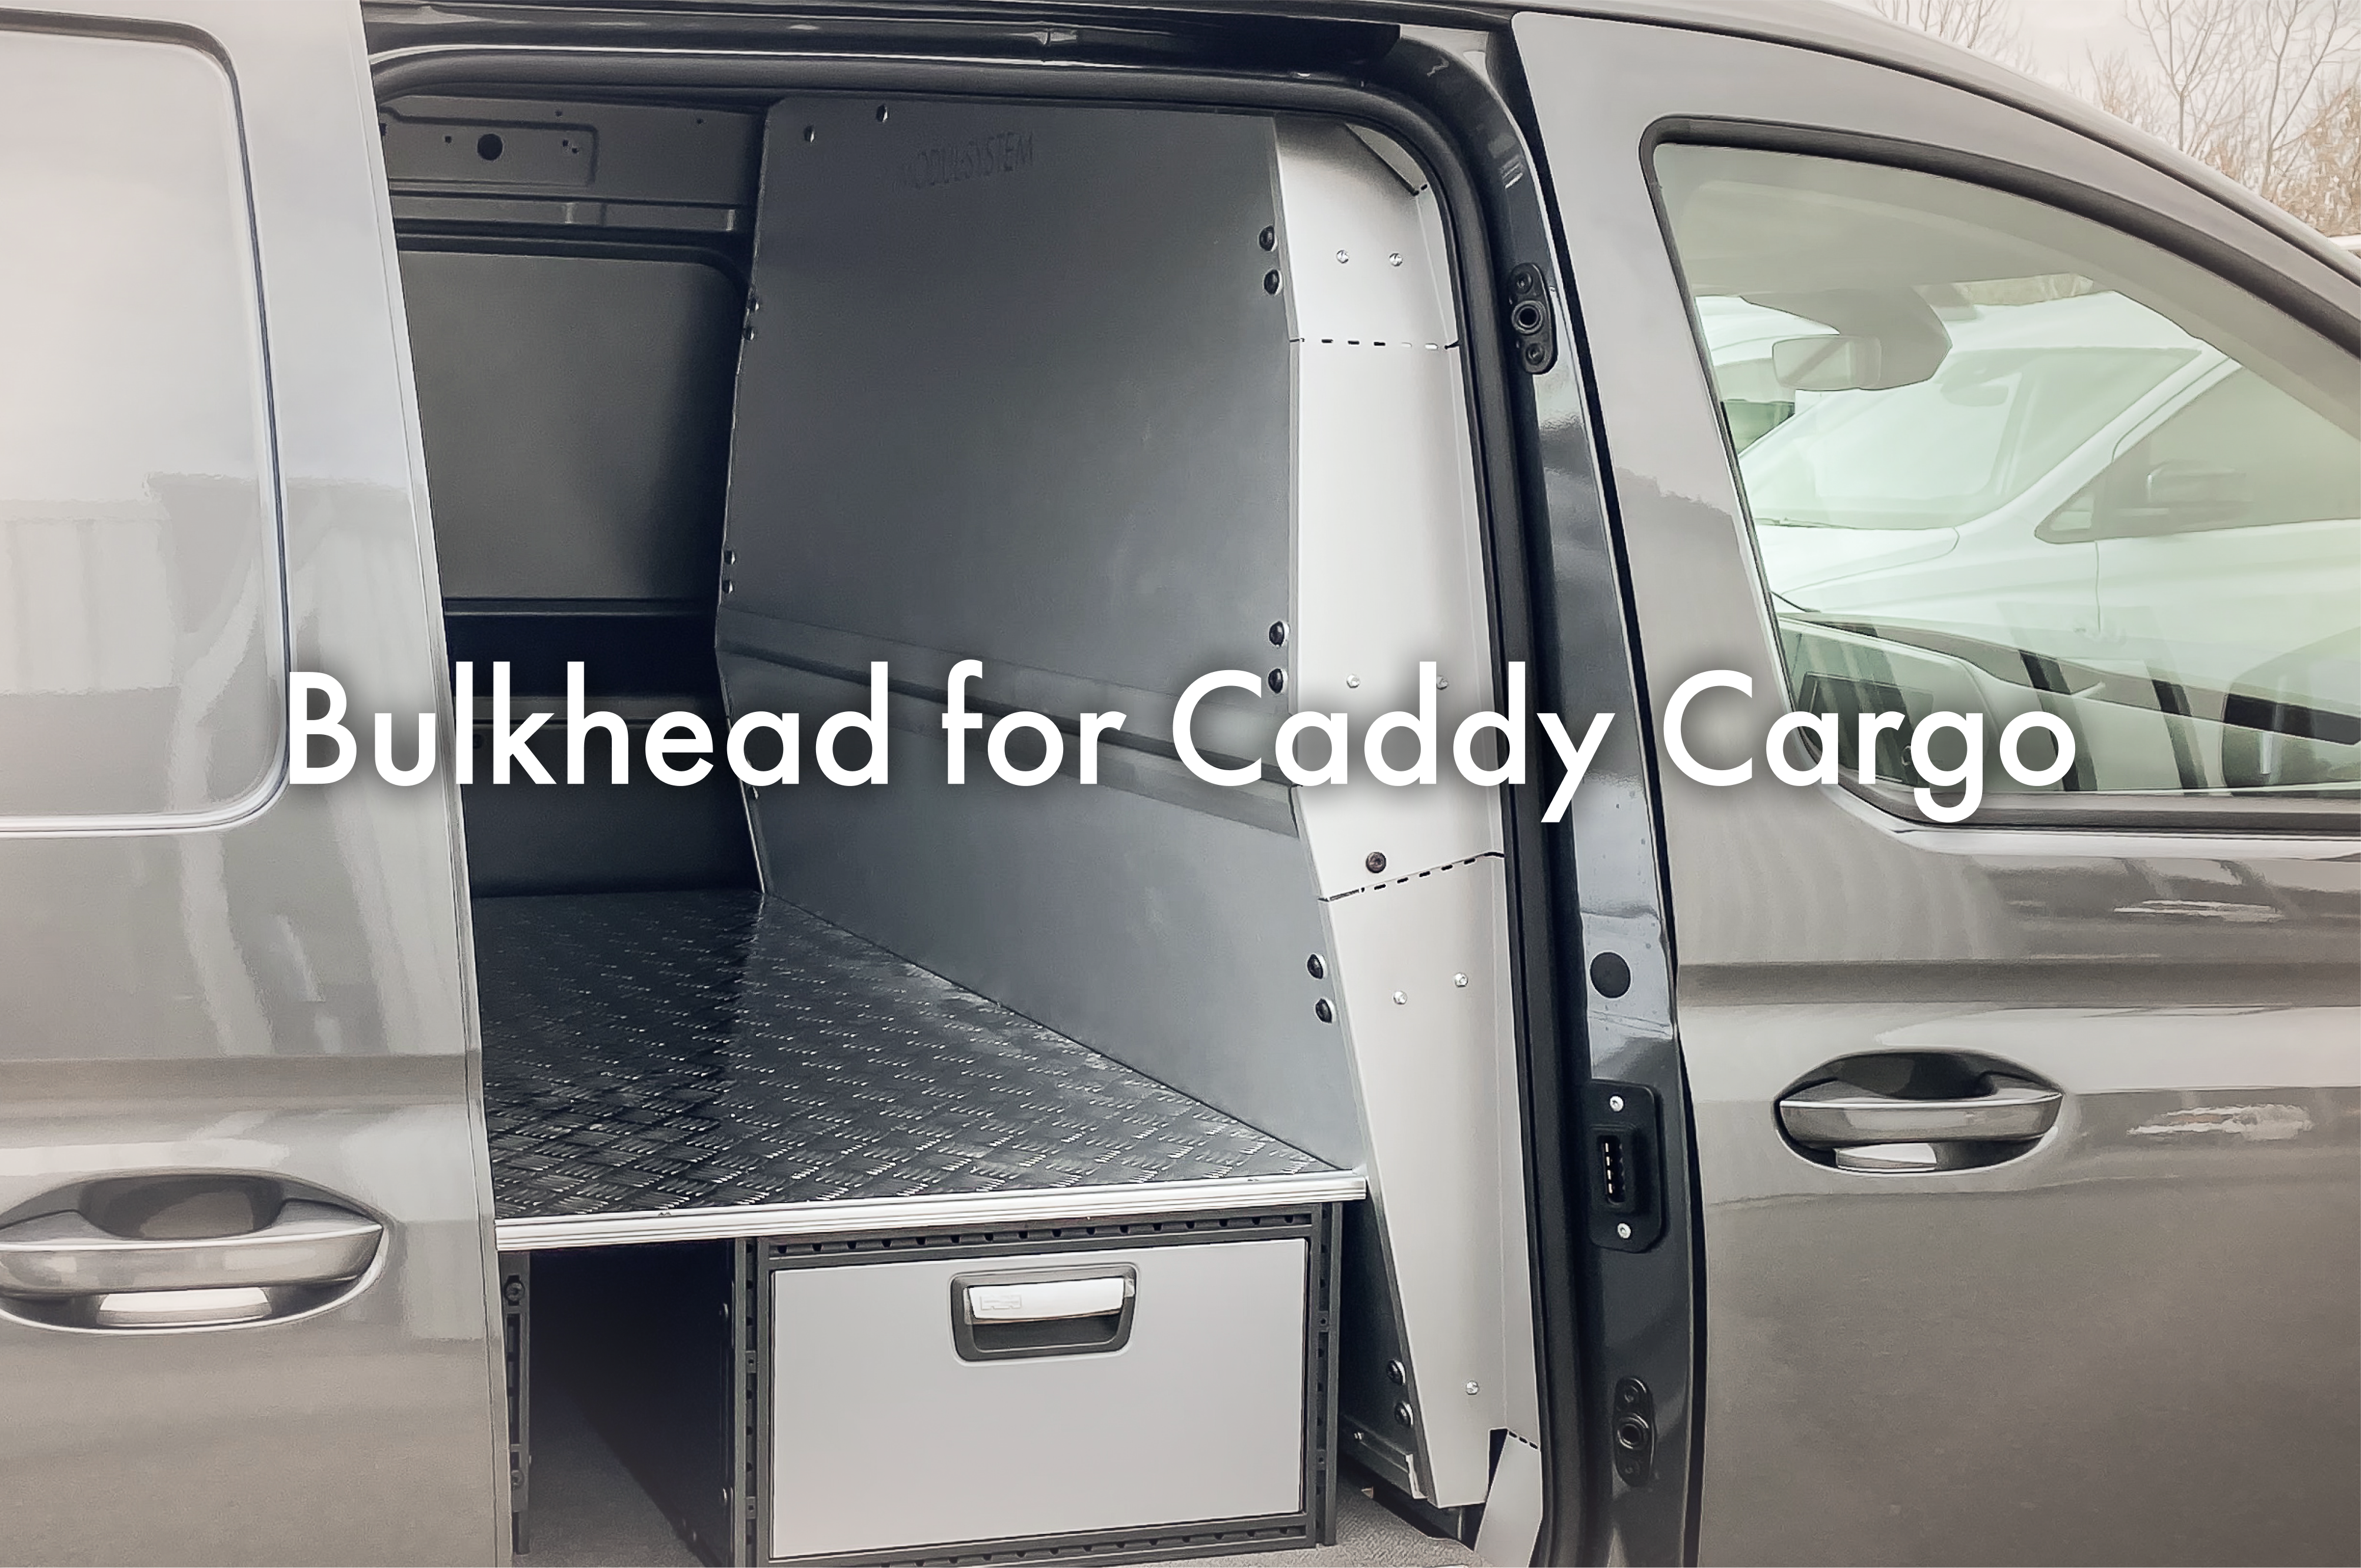 Antepara de segurança para o Caddy Cargo  